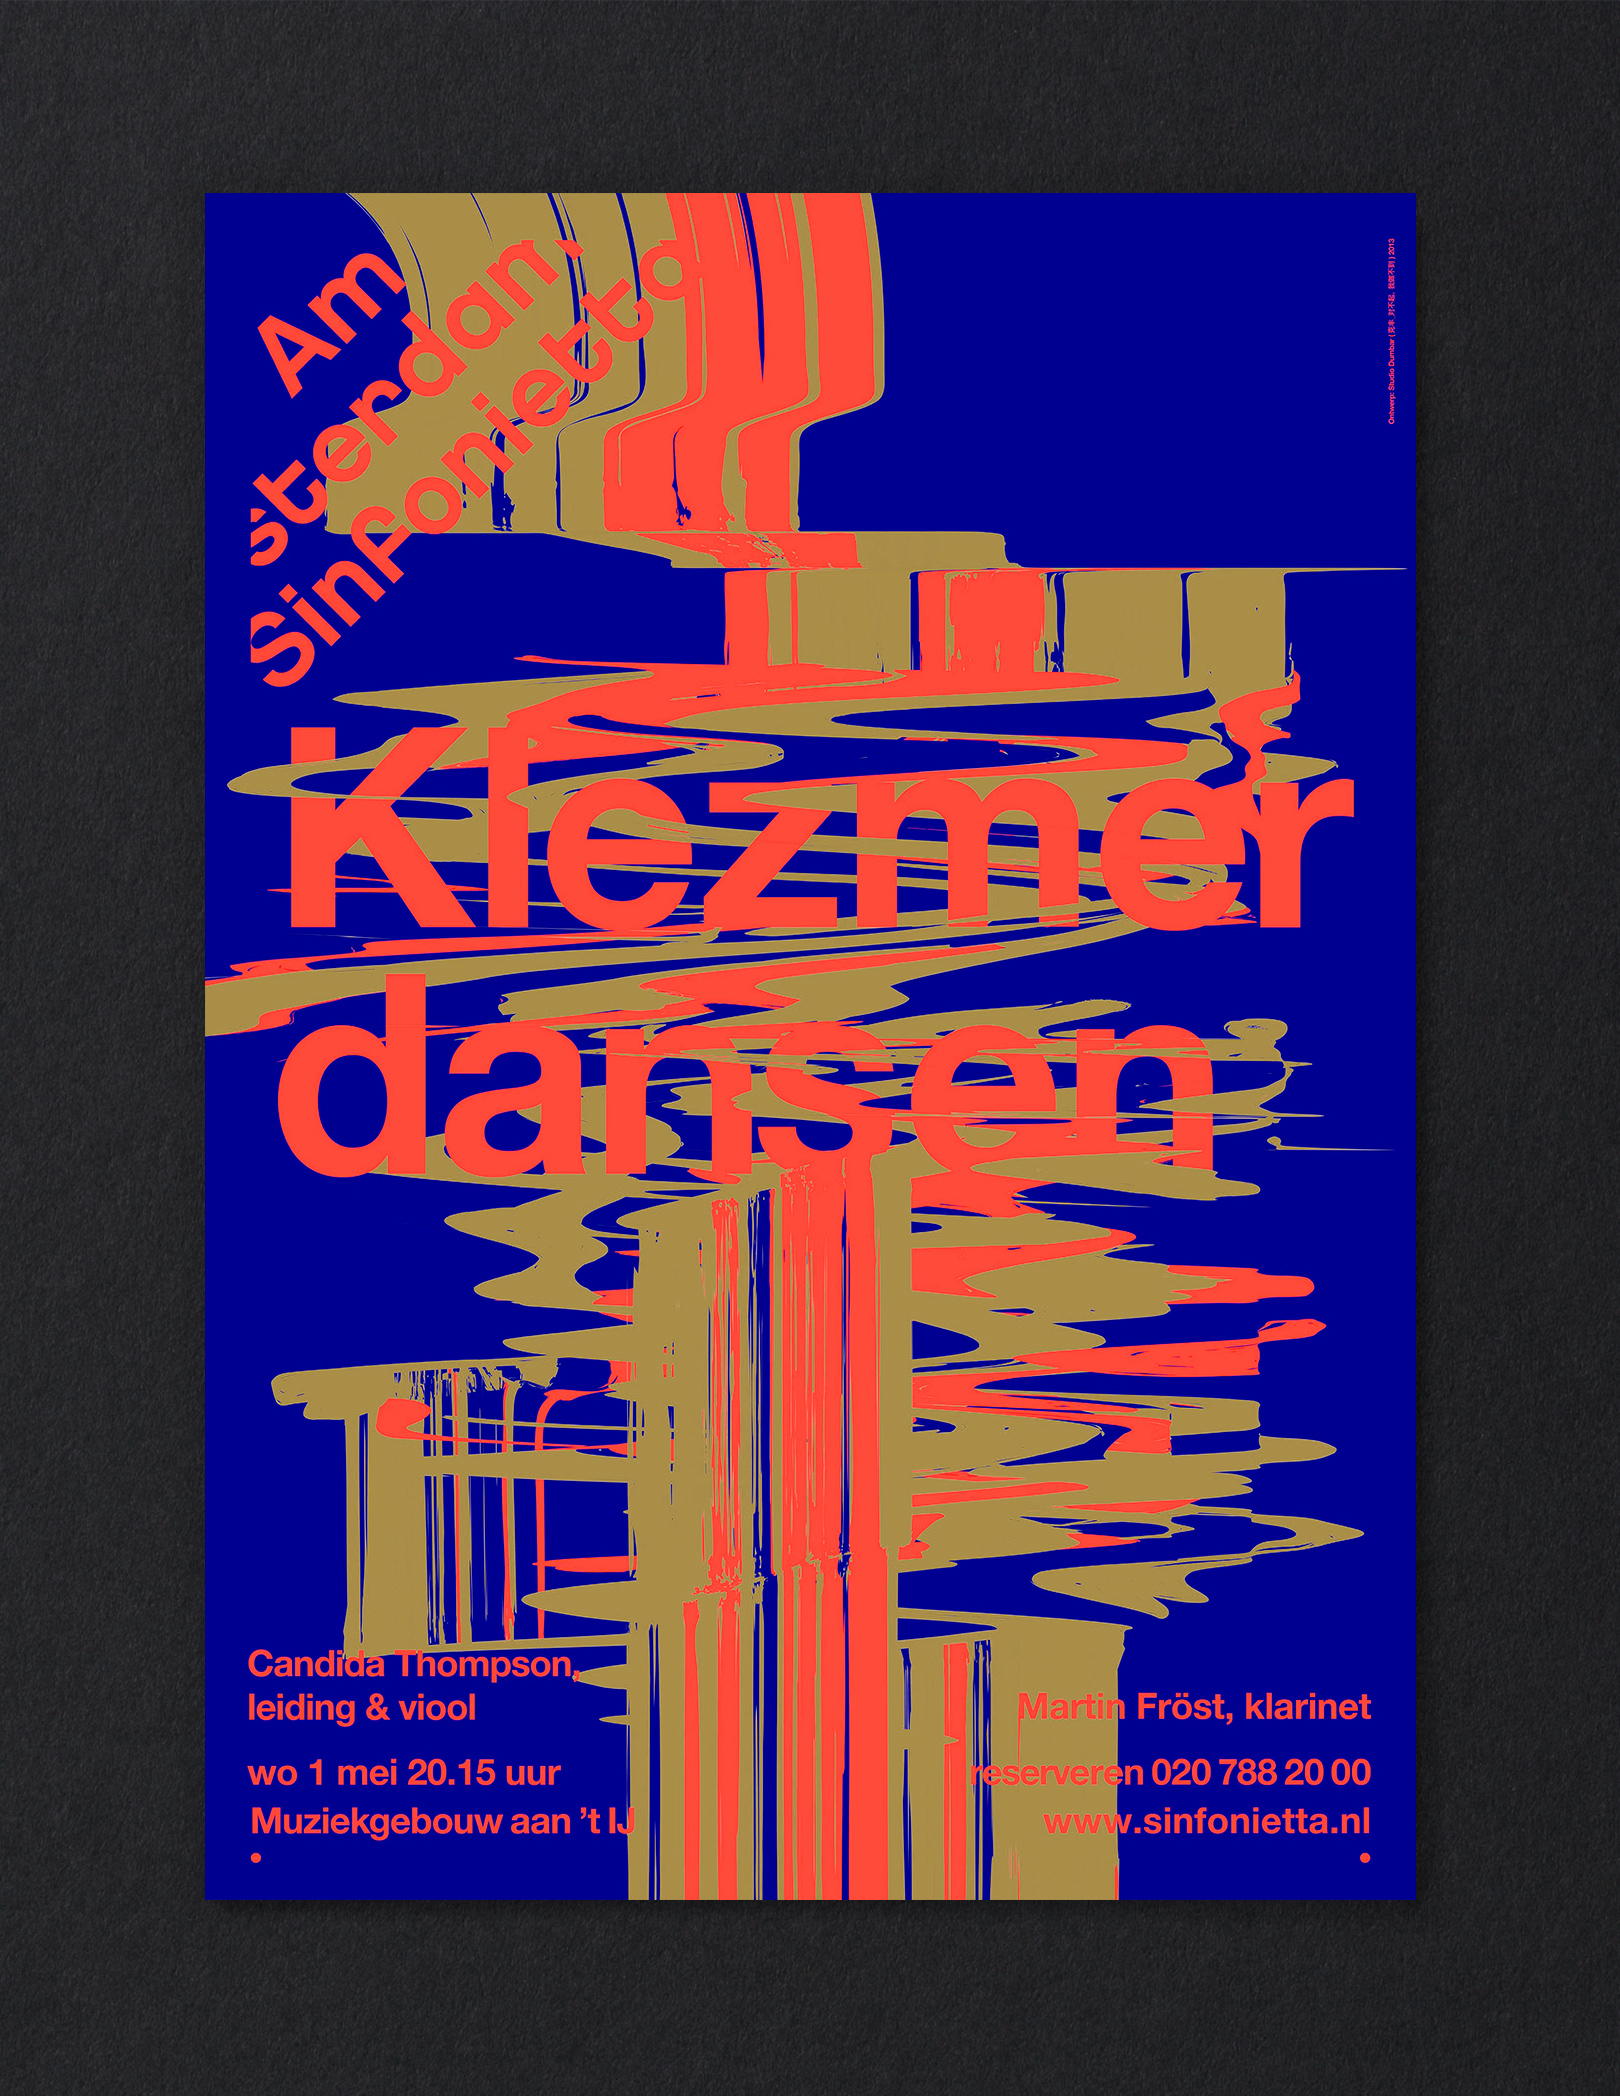 Amsterdam Sinfonietta Posters Kiezmer Dansen